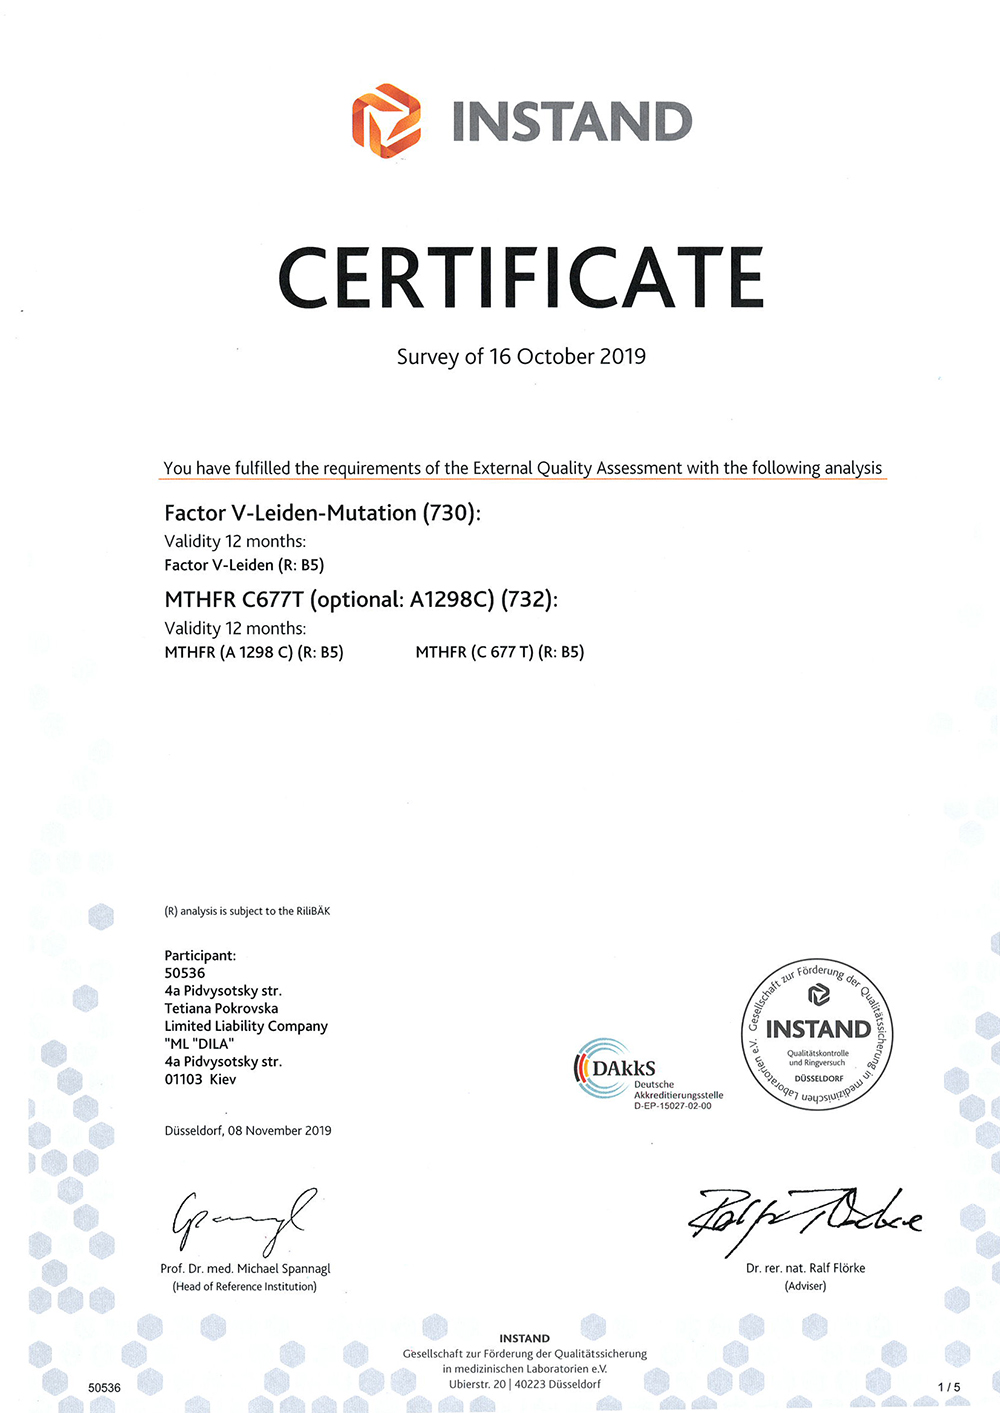 Фото - Сертификат об успешном прохождении внешней оценки качества по системе INSTAND e.v (Германия). Factor V-Leiden-Mutation, MTHFR C677T